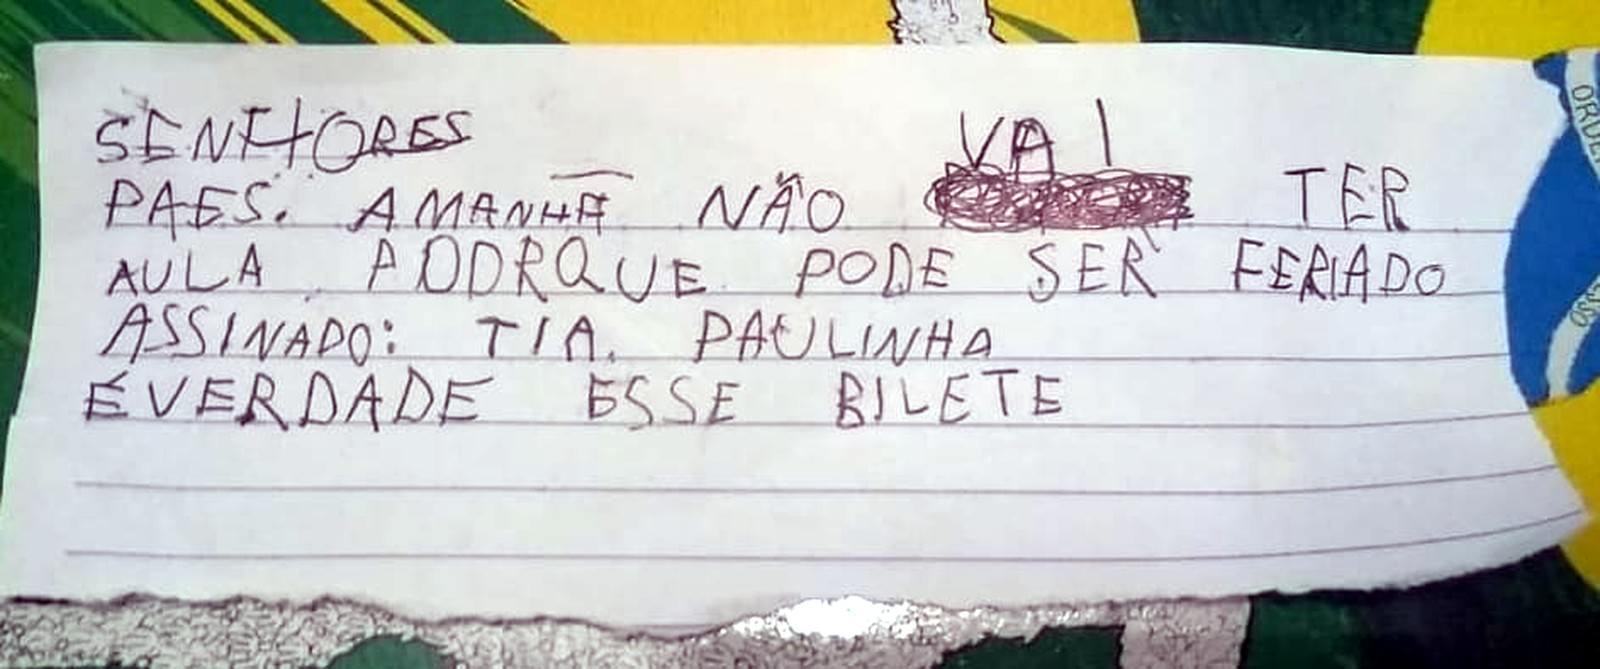 Menino de 5 anos manda bilhete em nome da professora para não ir à escola